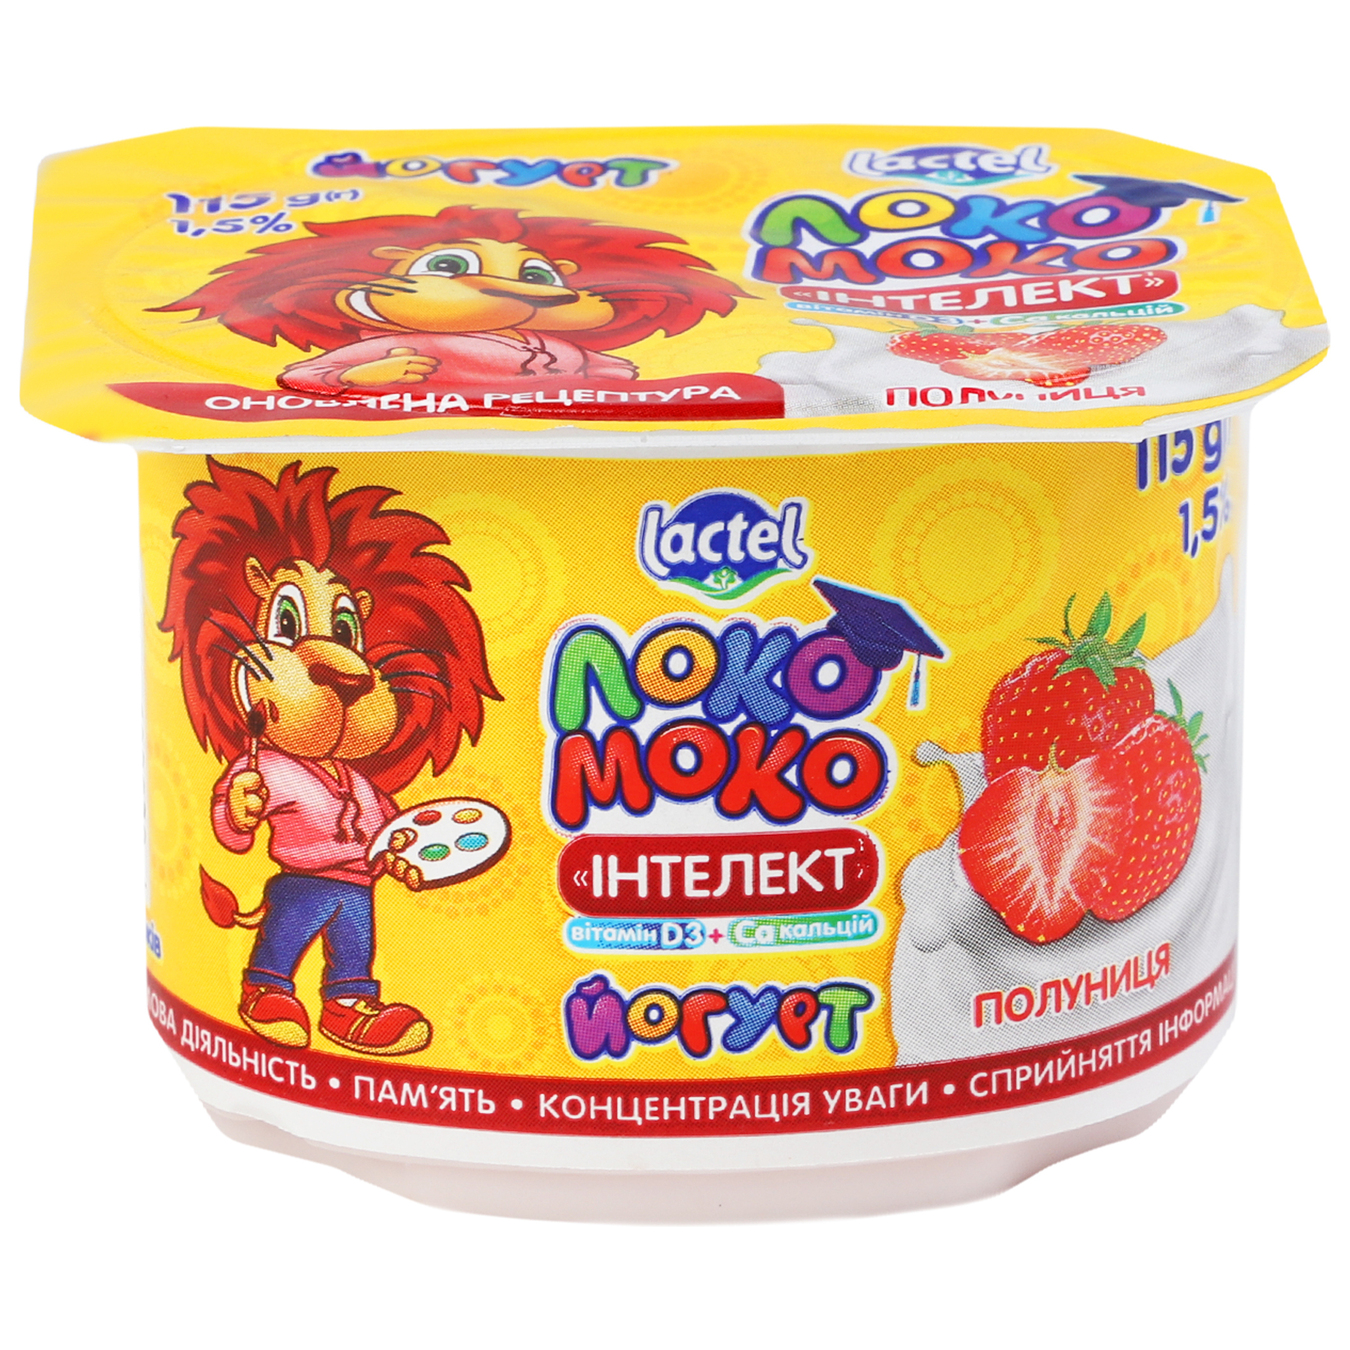 Yogurt Loko Moko with strawberries 1.5% 115g 6